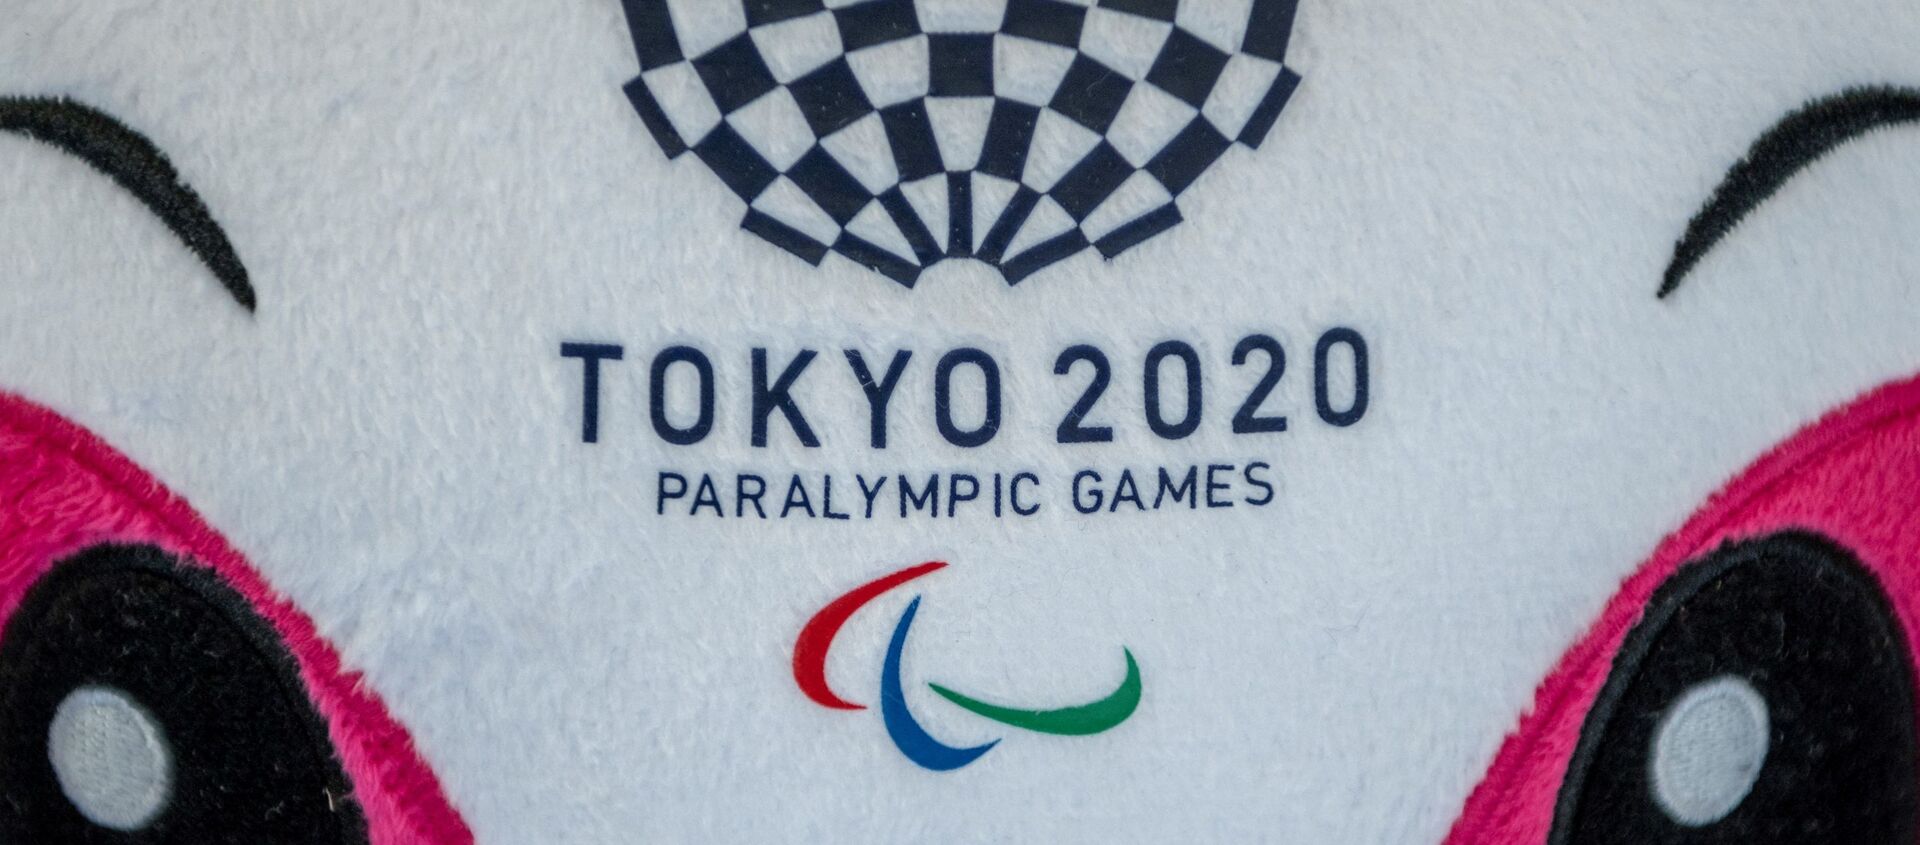 パラリンピック - Sputnik 日本, 1920, 11.08.2021